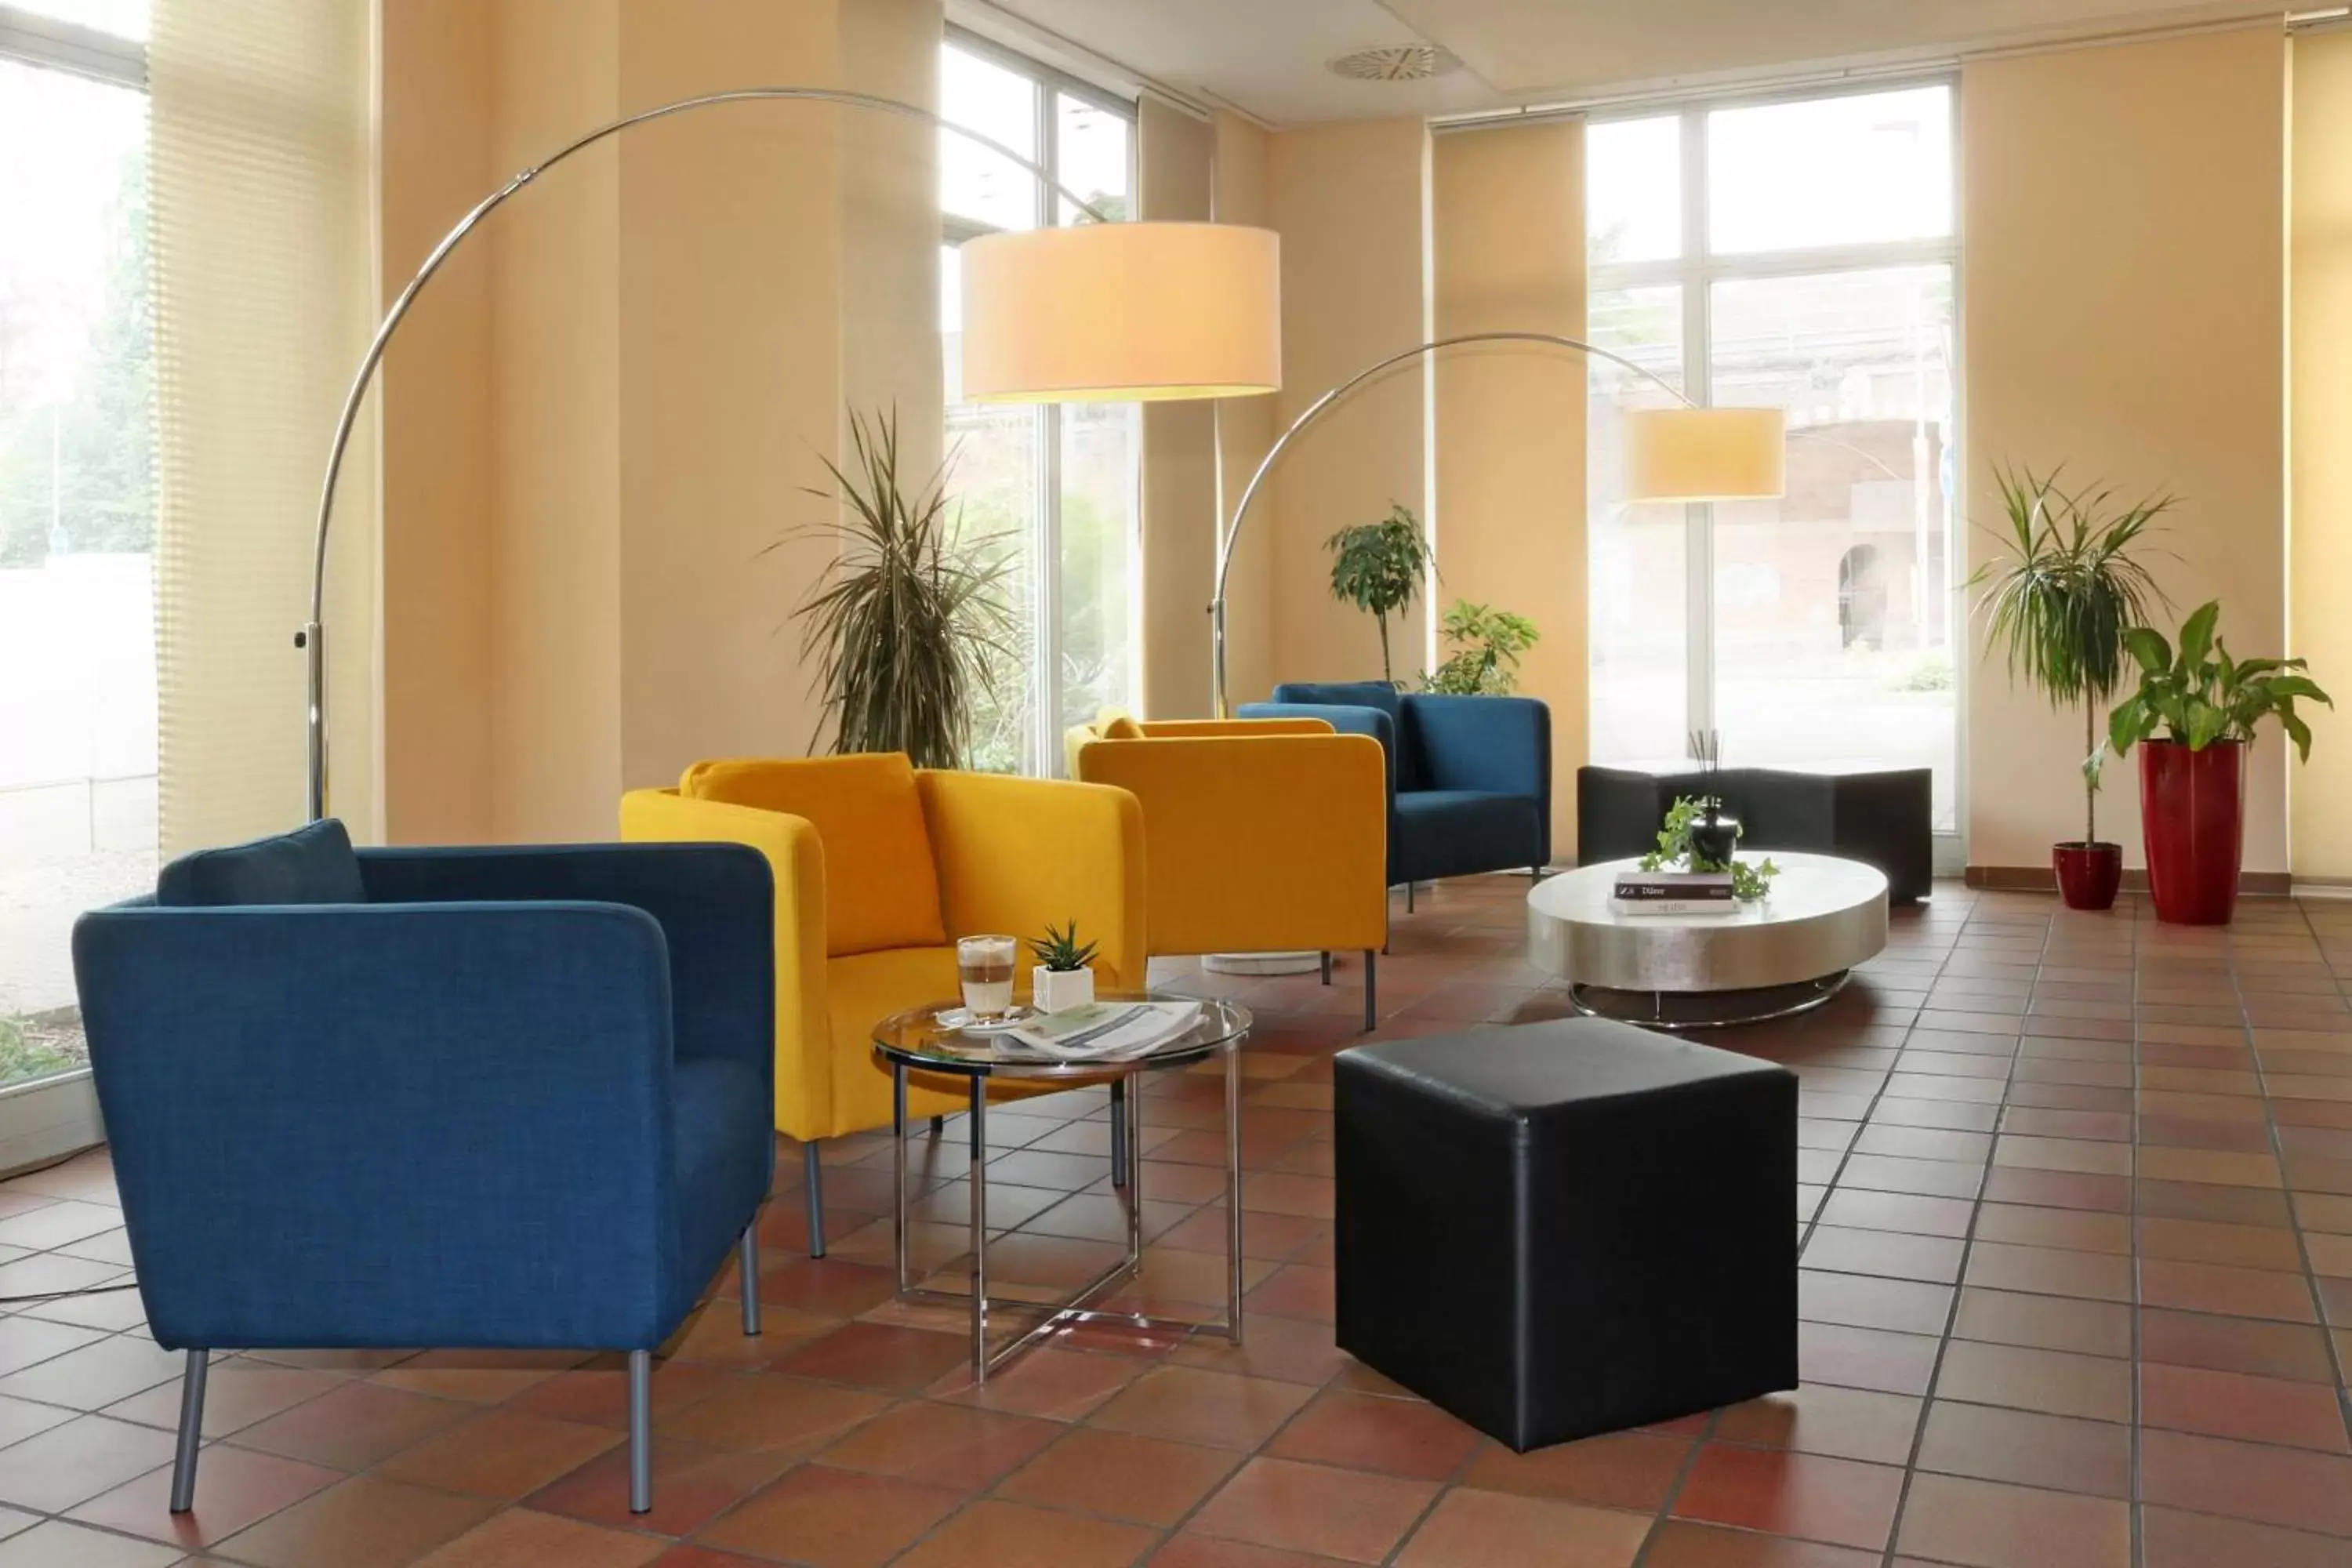 Lobby or reception, Lobby/Reception in Best Western Hotel Halle-Merseburg